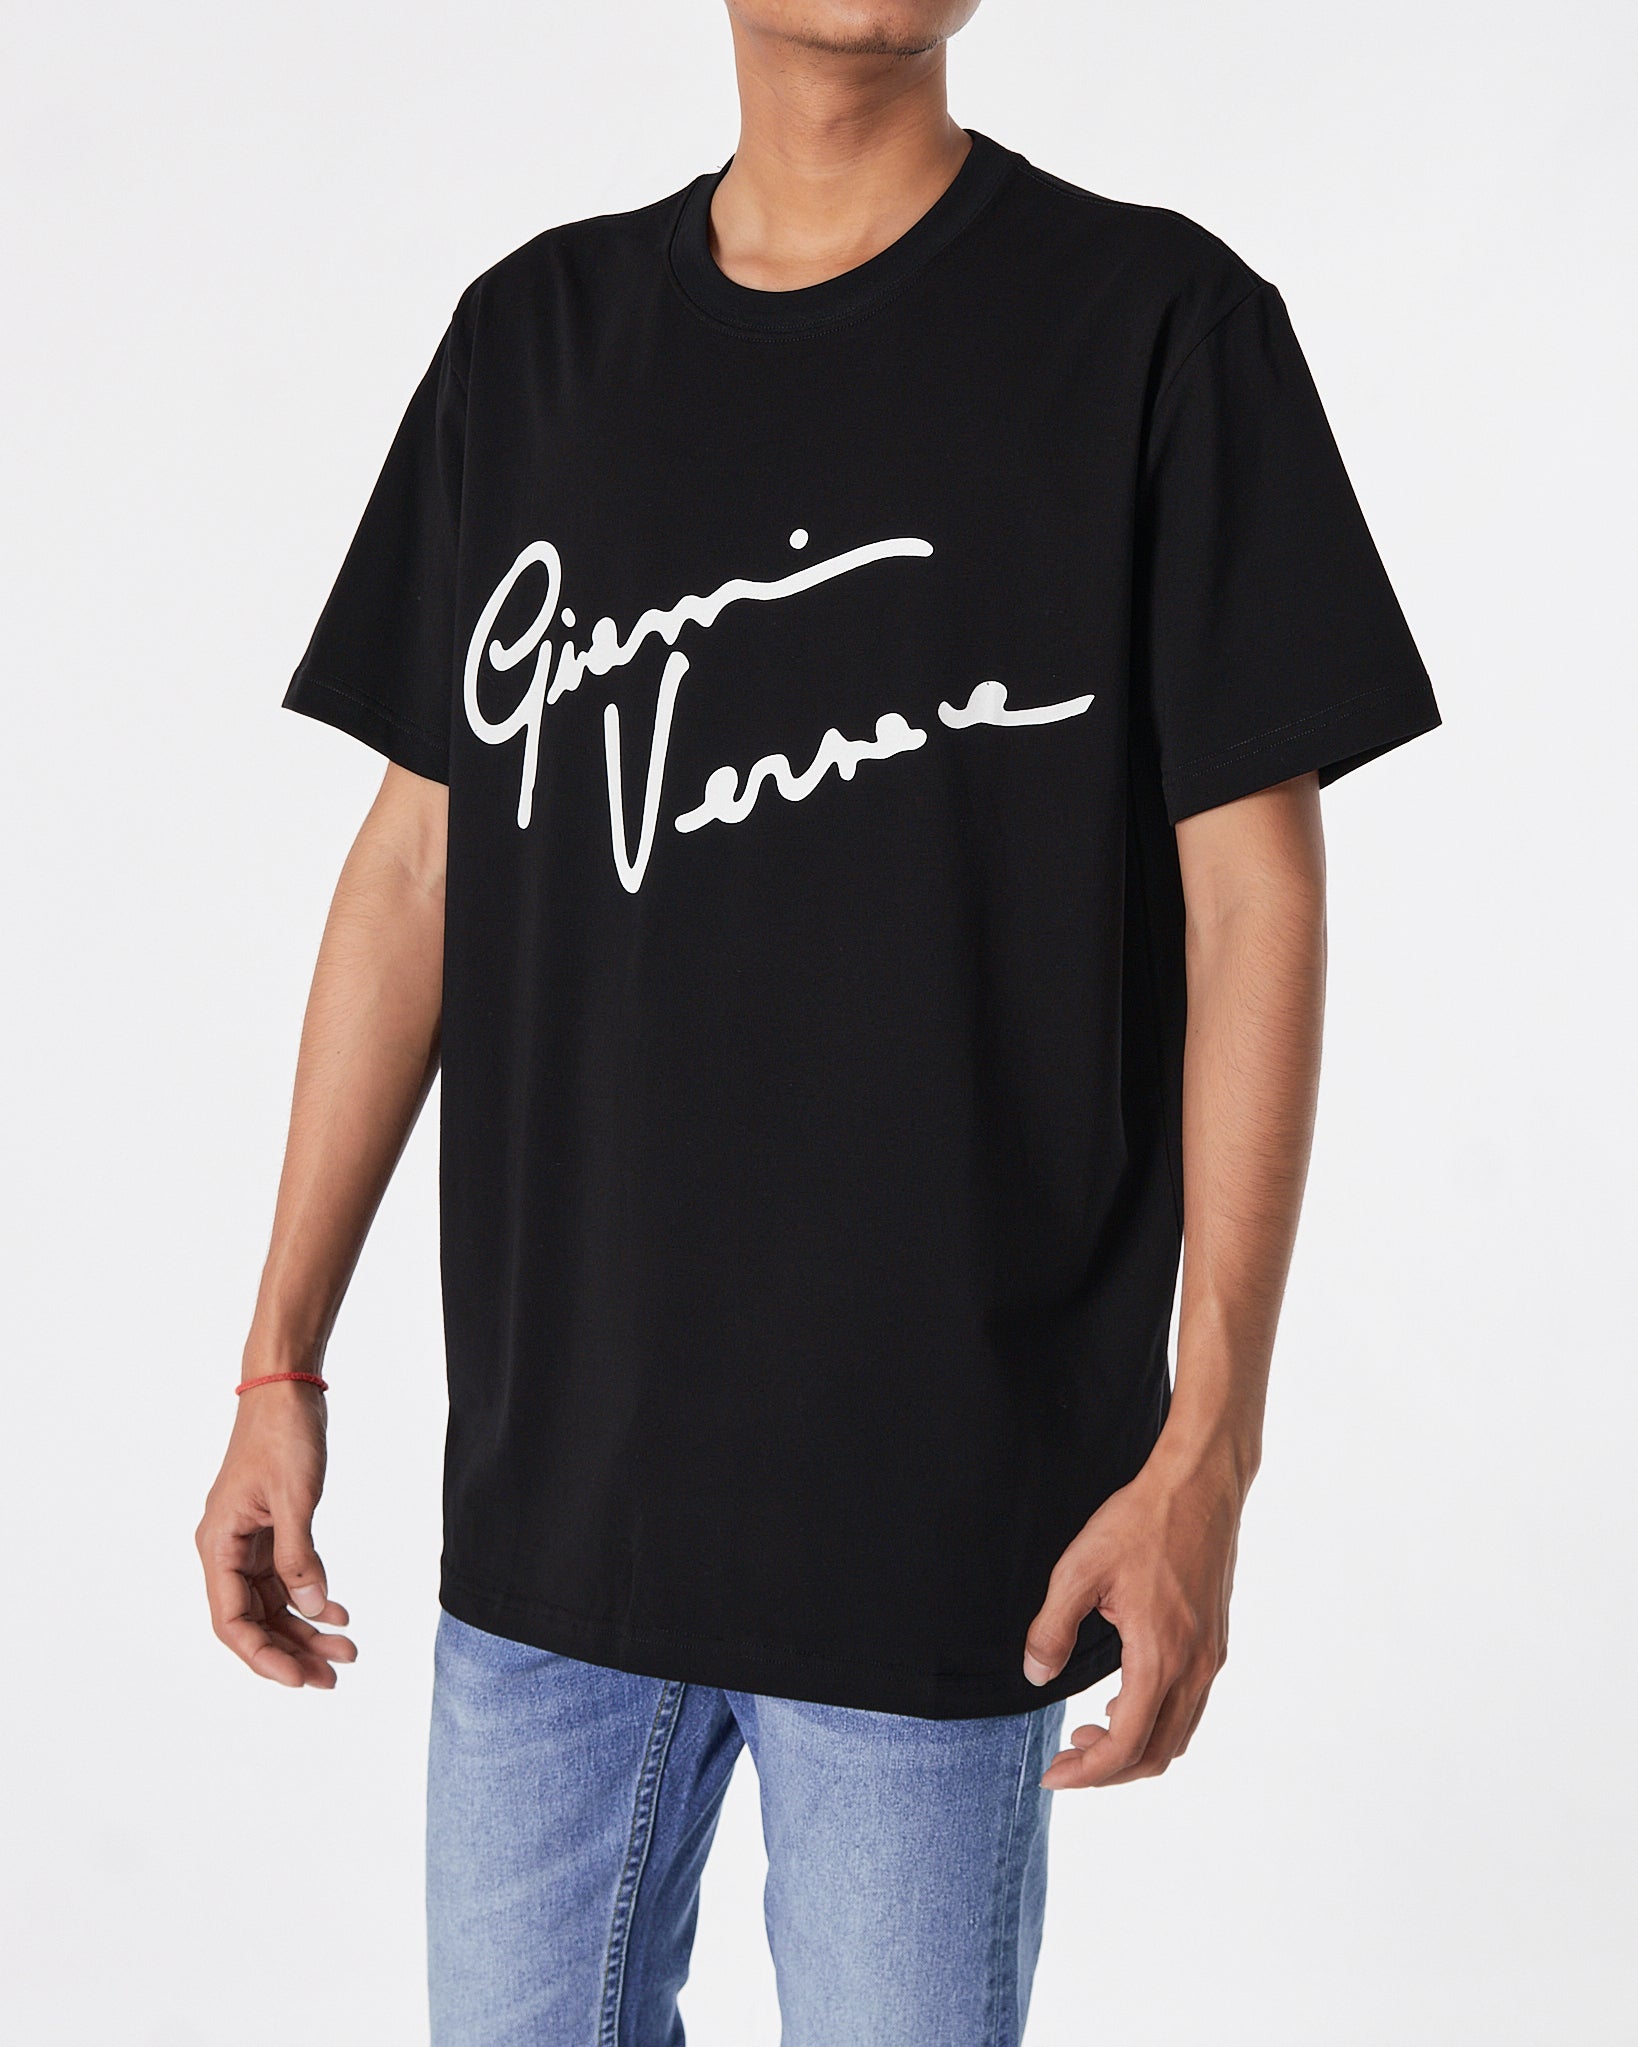 VER Signature Logo Printed Men Black T-Shirt 16.90